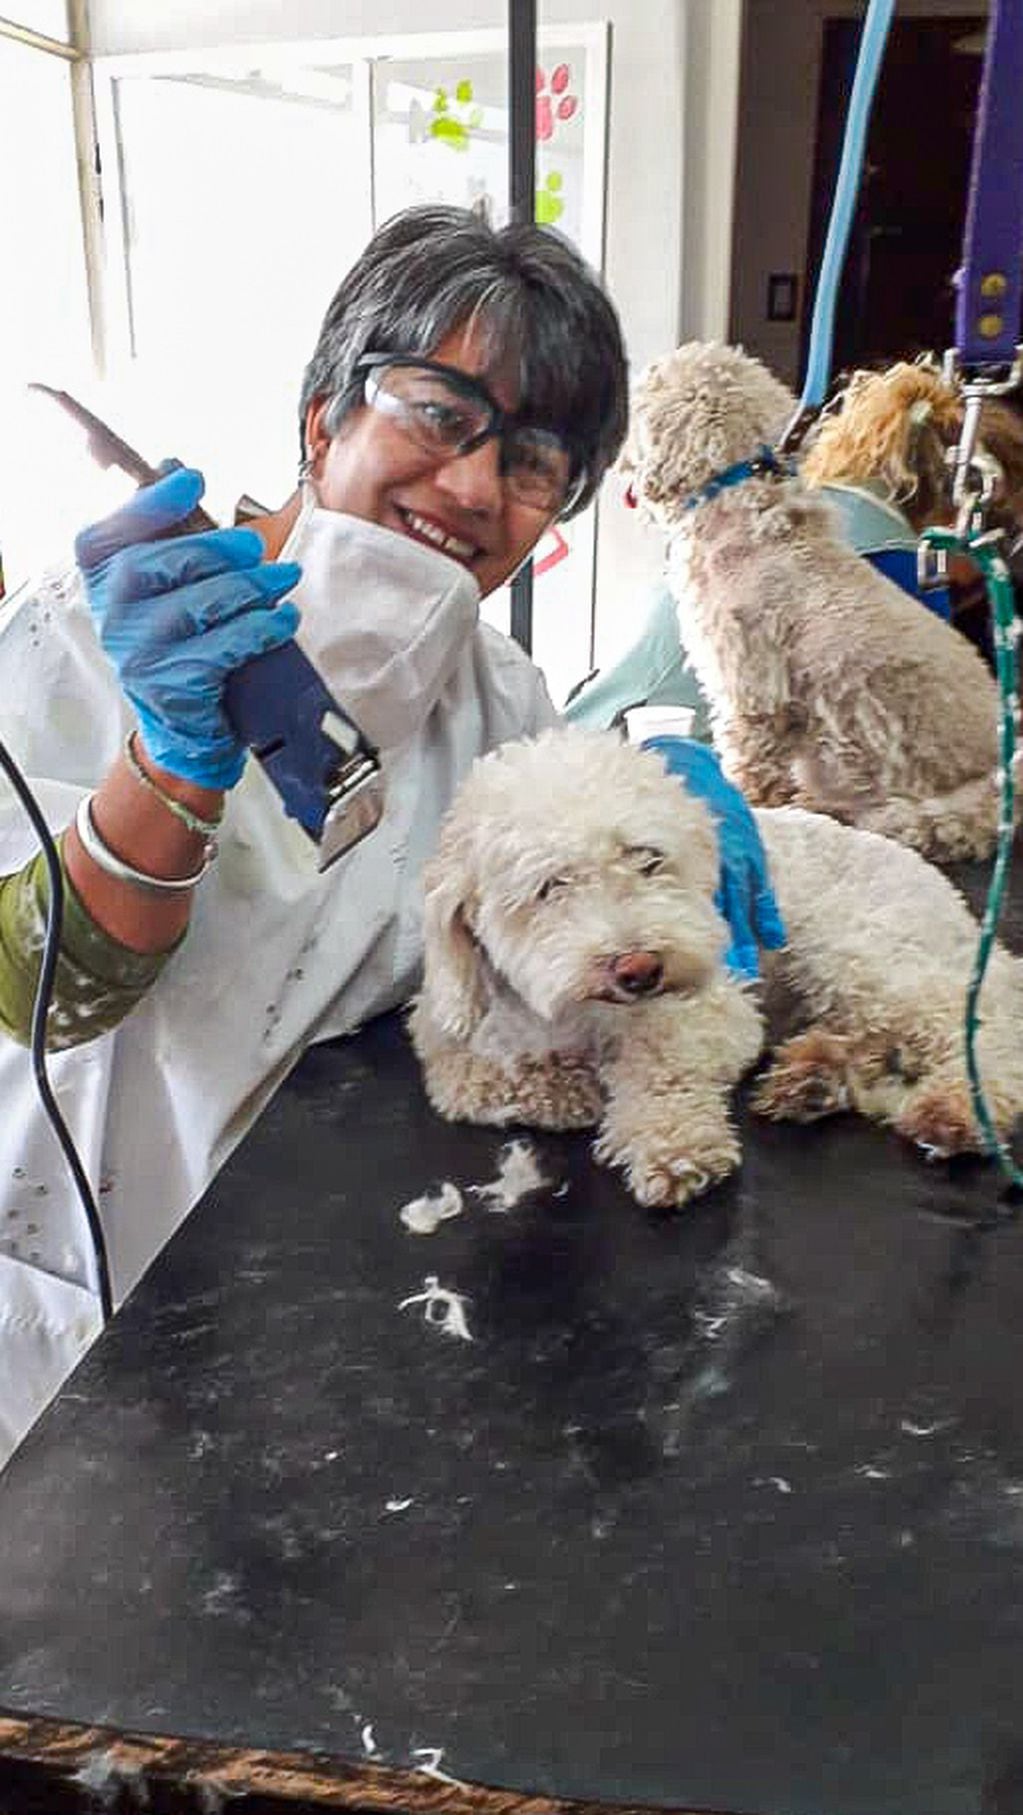 Sandra Abaca, peluquera canina. Recomienda extremar los cuidados con el calor, pero no rapar a los animalitos.